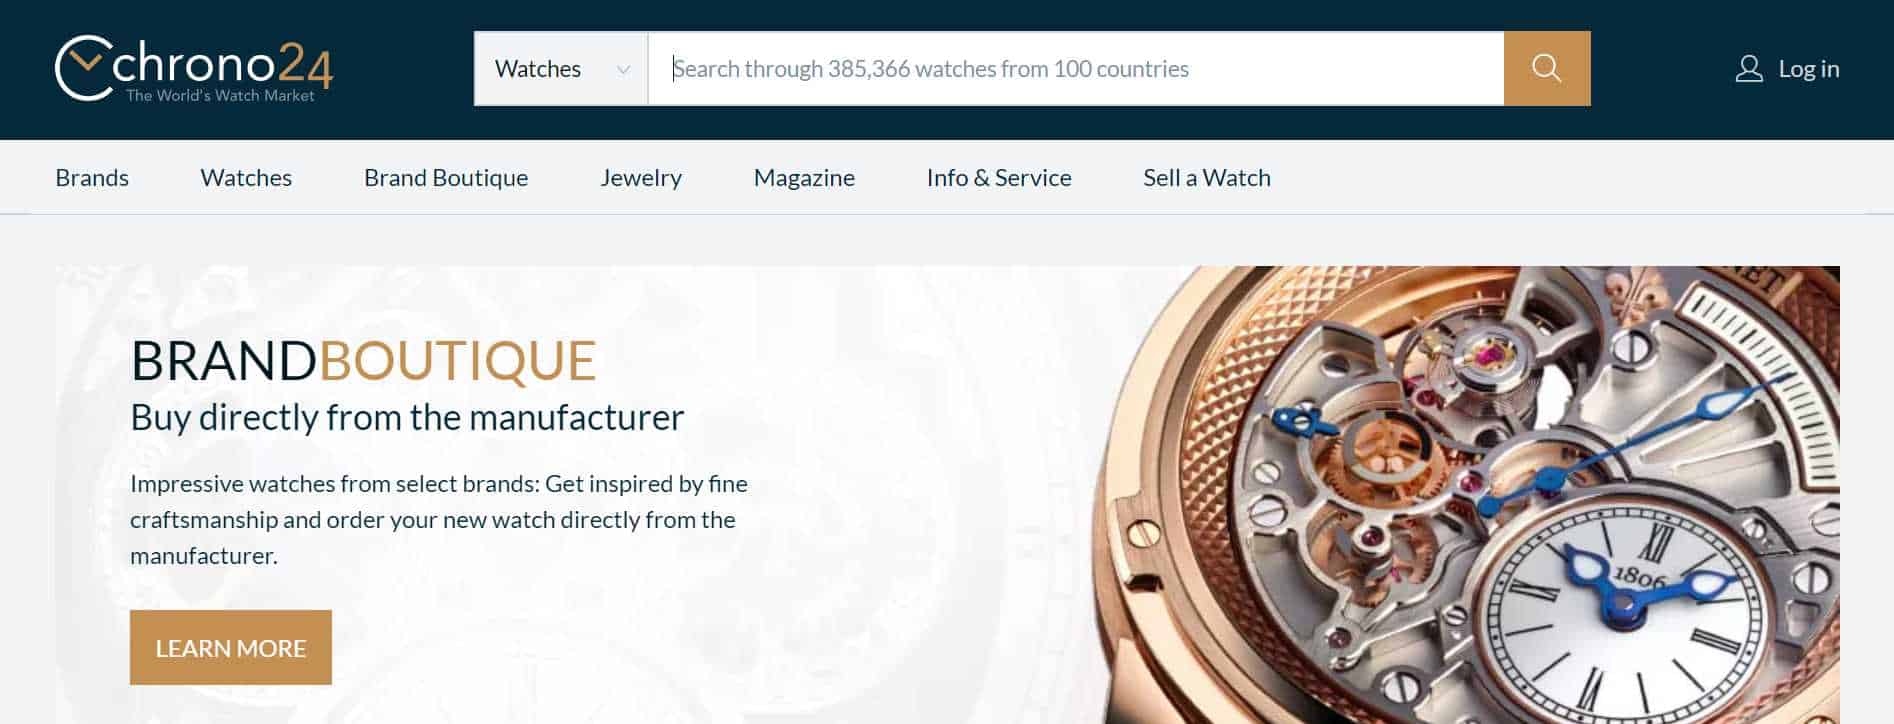 chrono24 luxury watches online